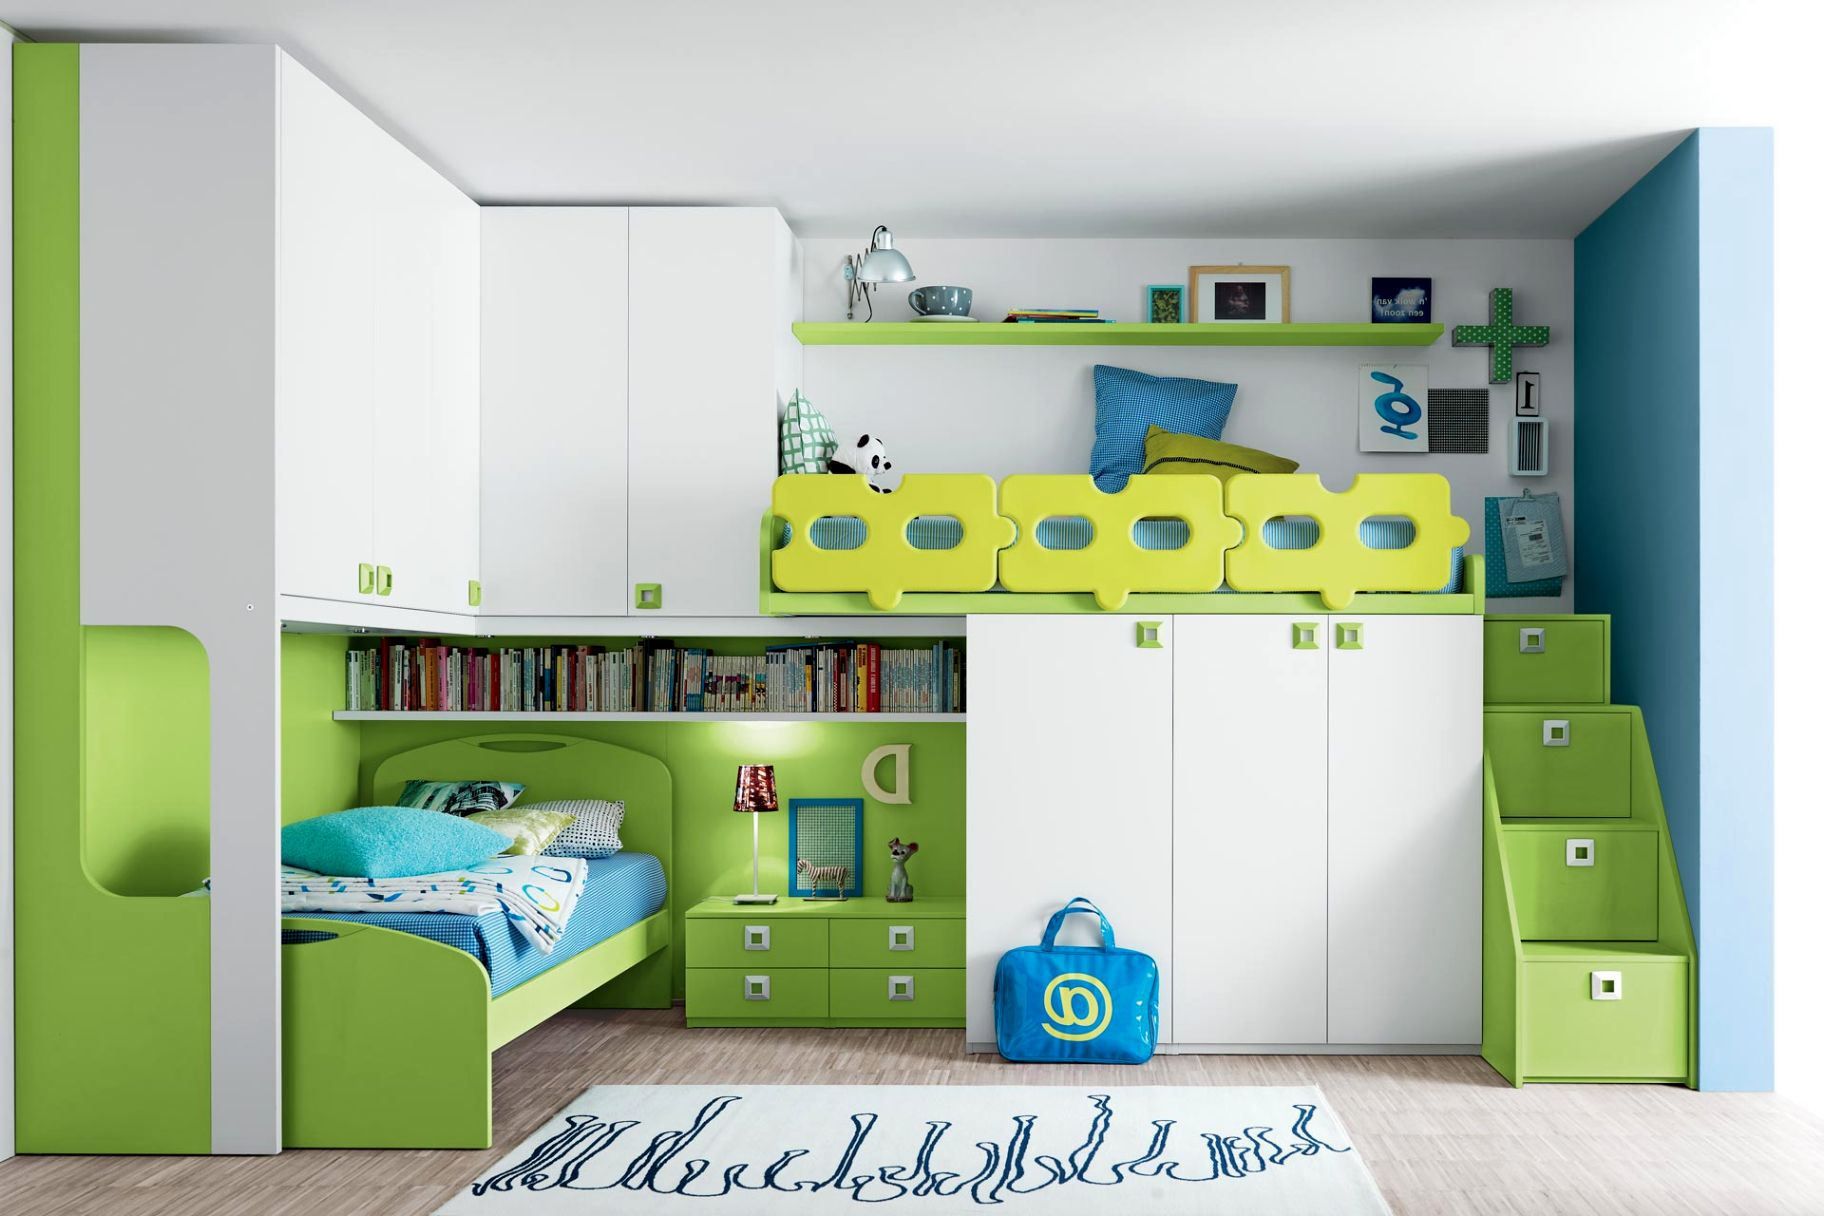 Mẫu phòng ngủ hiện đại màu xanh lá     